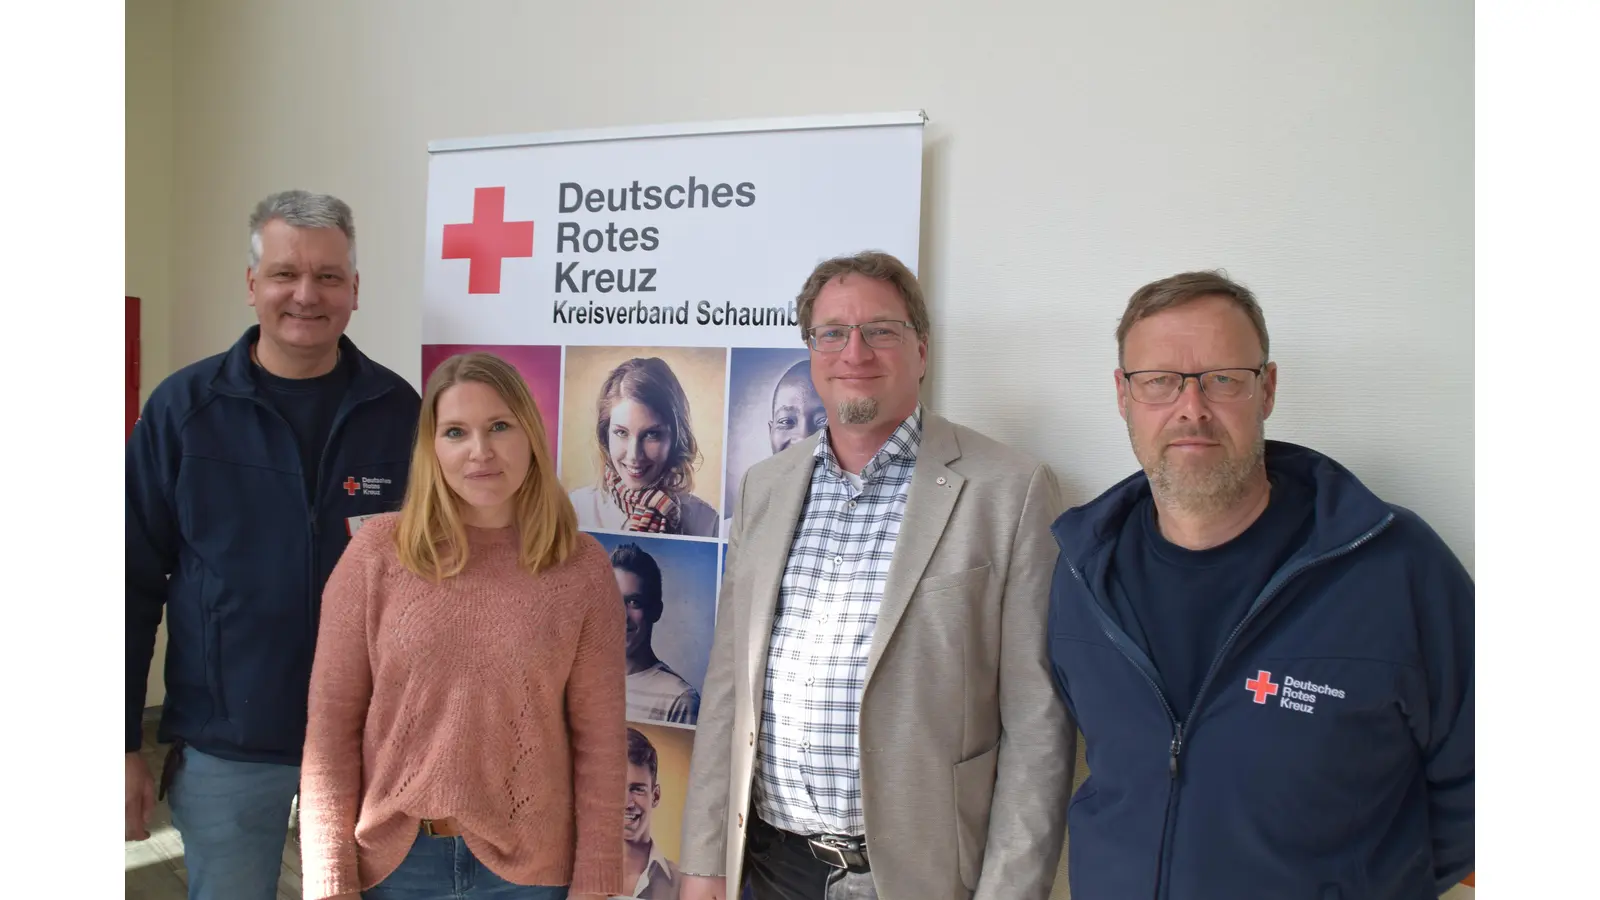 Fachleute für Flüchtlingsfragen beim DRK (v.l.n.r.): Michael Kunde, Sara Steininger (Marketing/Presse), Thomas Hoffmann, Christof Fischer. (Foto: ab)